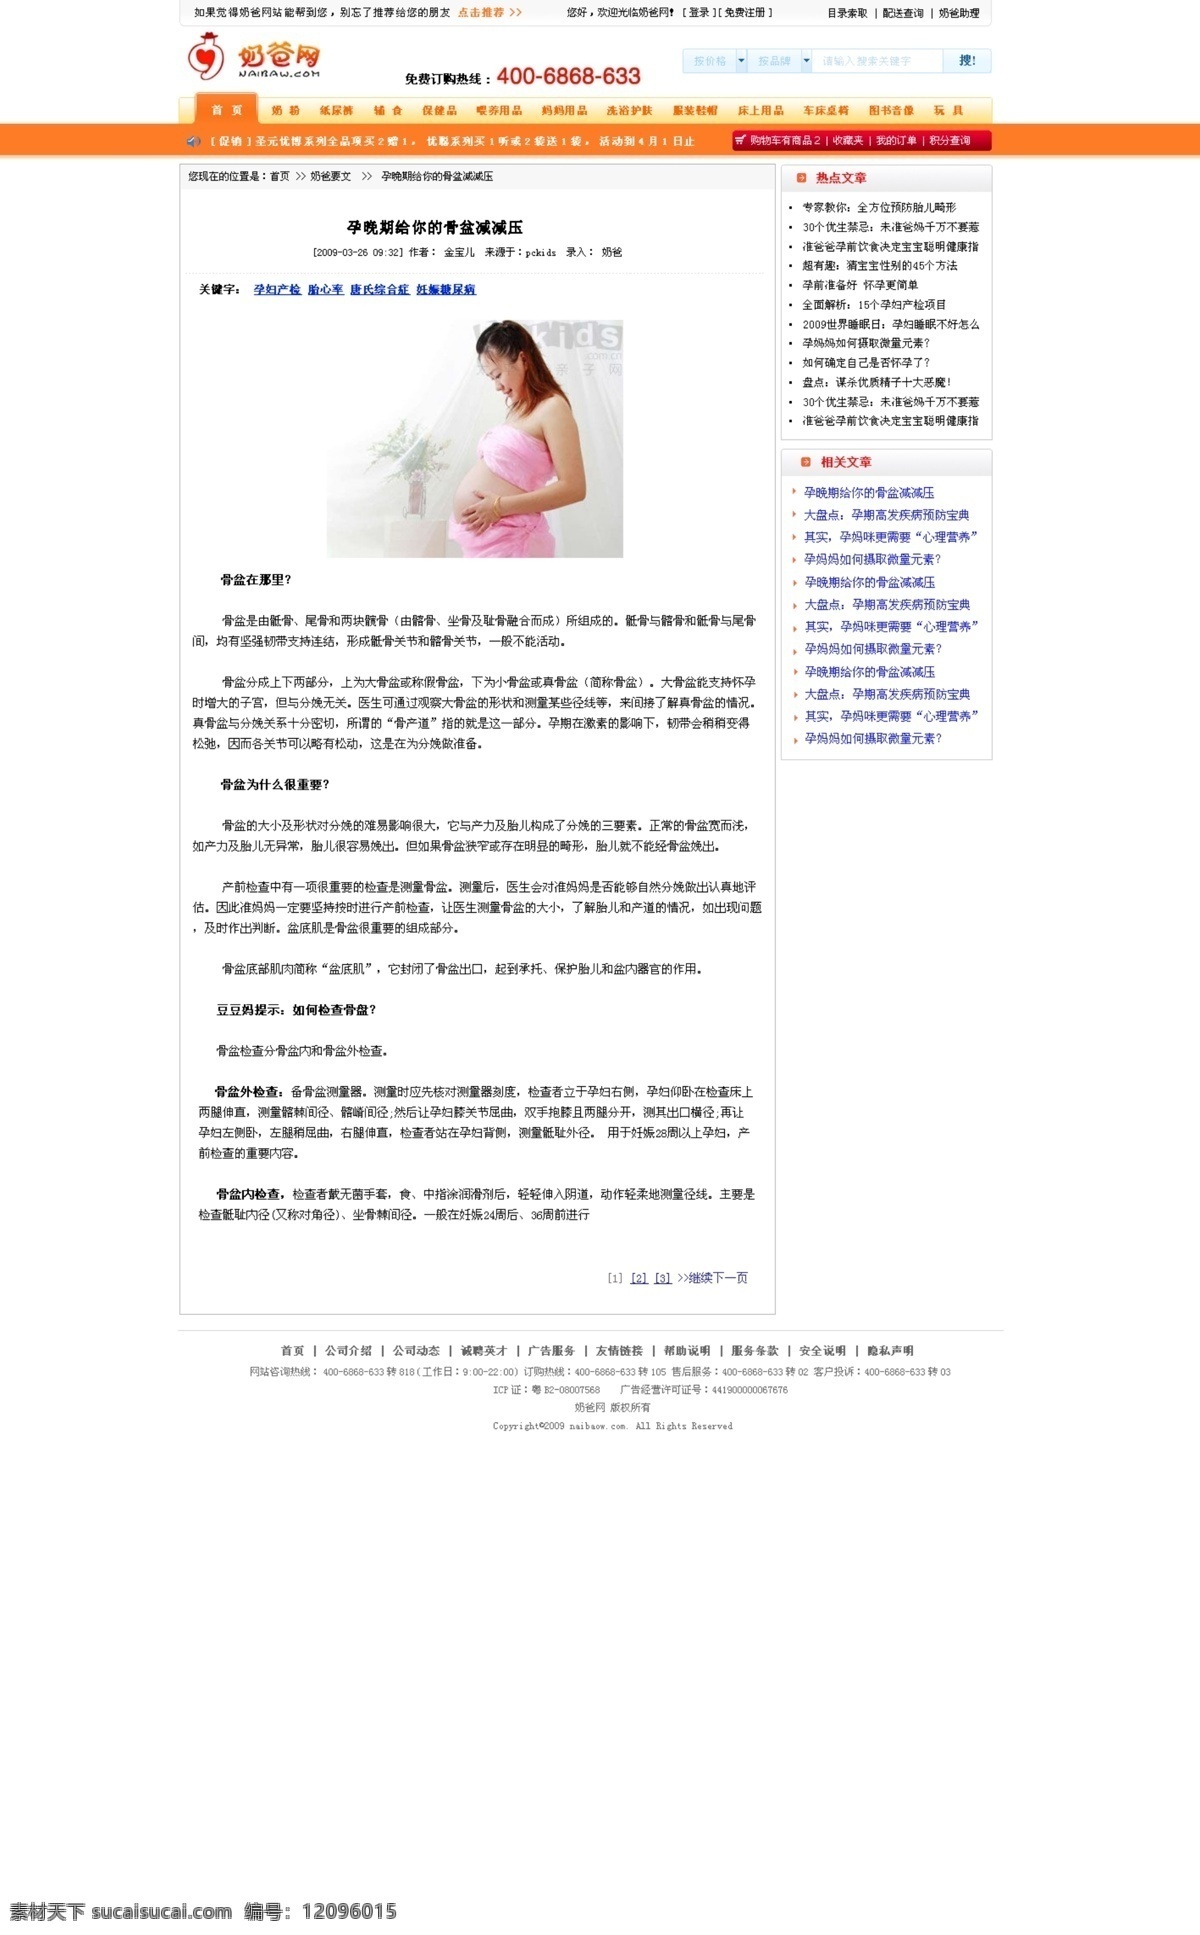 网页模板 news 源文件 中文模版 新闻页面 奶爸网商城 网页素材